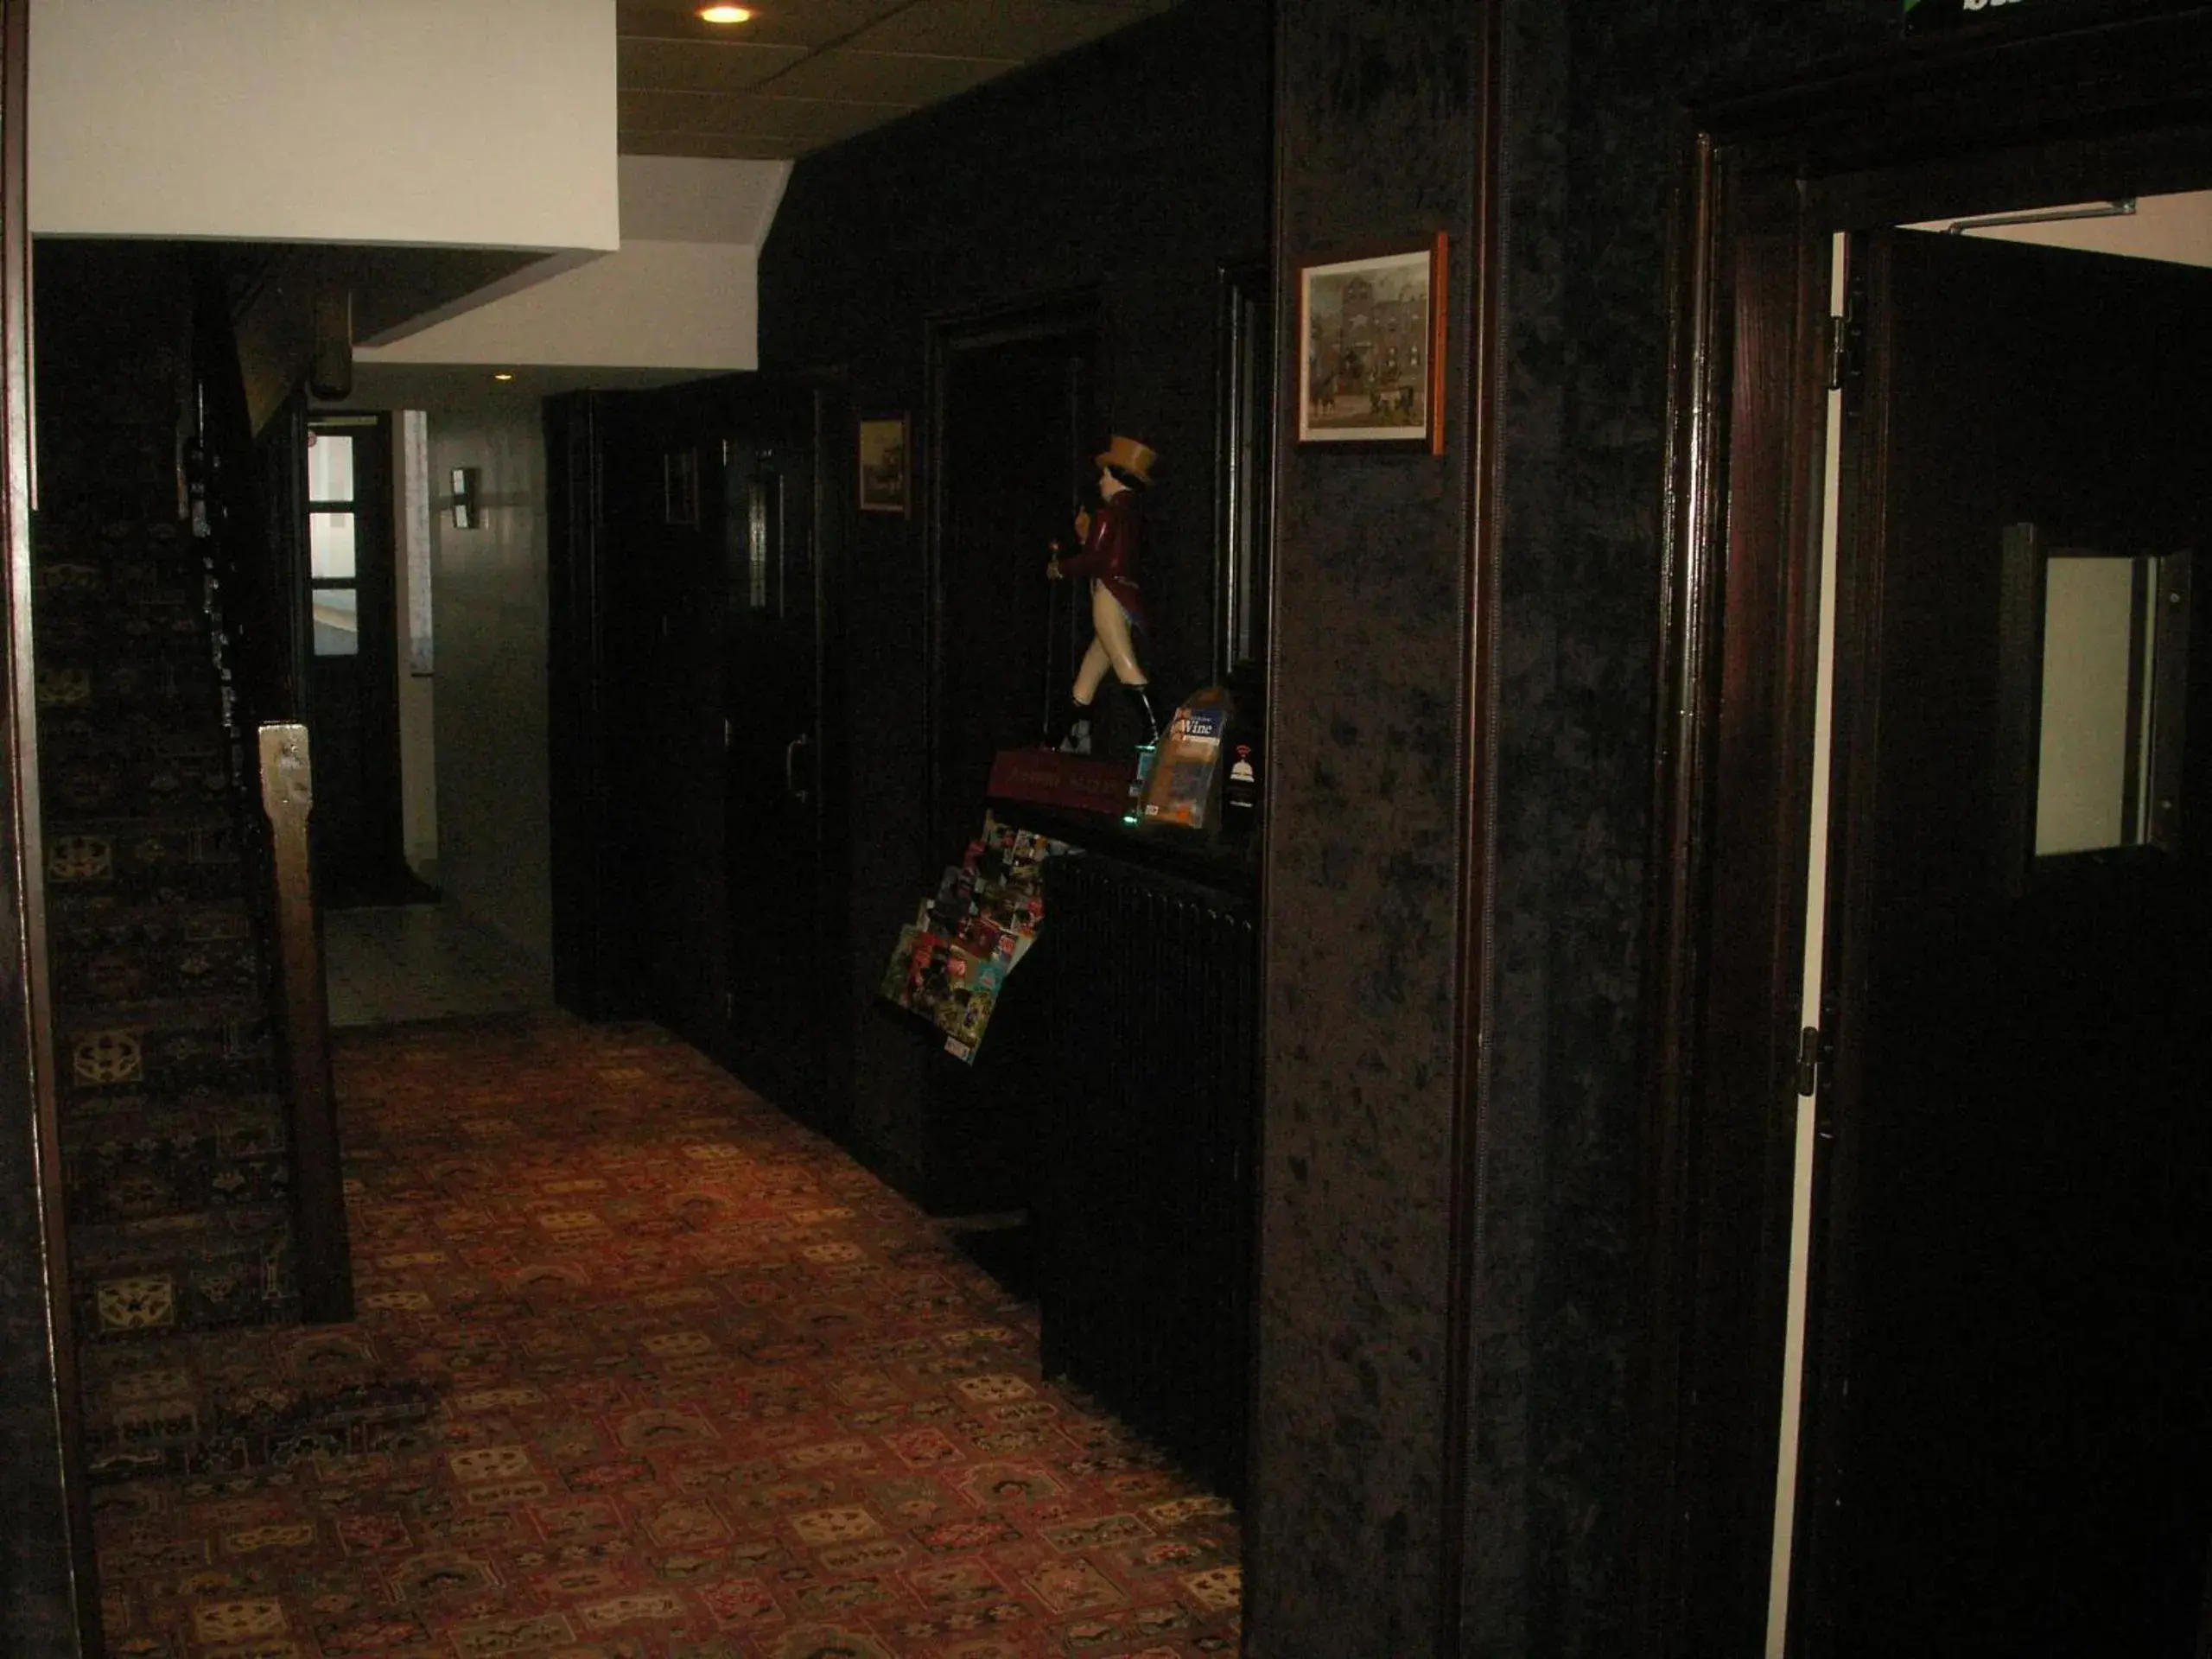 Lobby or reception in Metropol Hotel